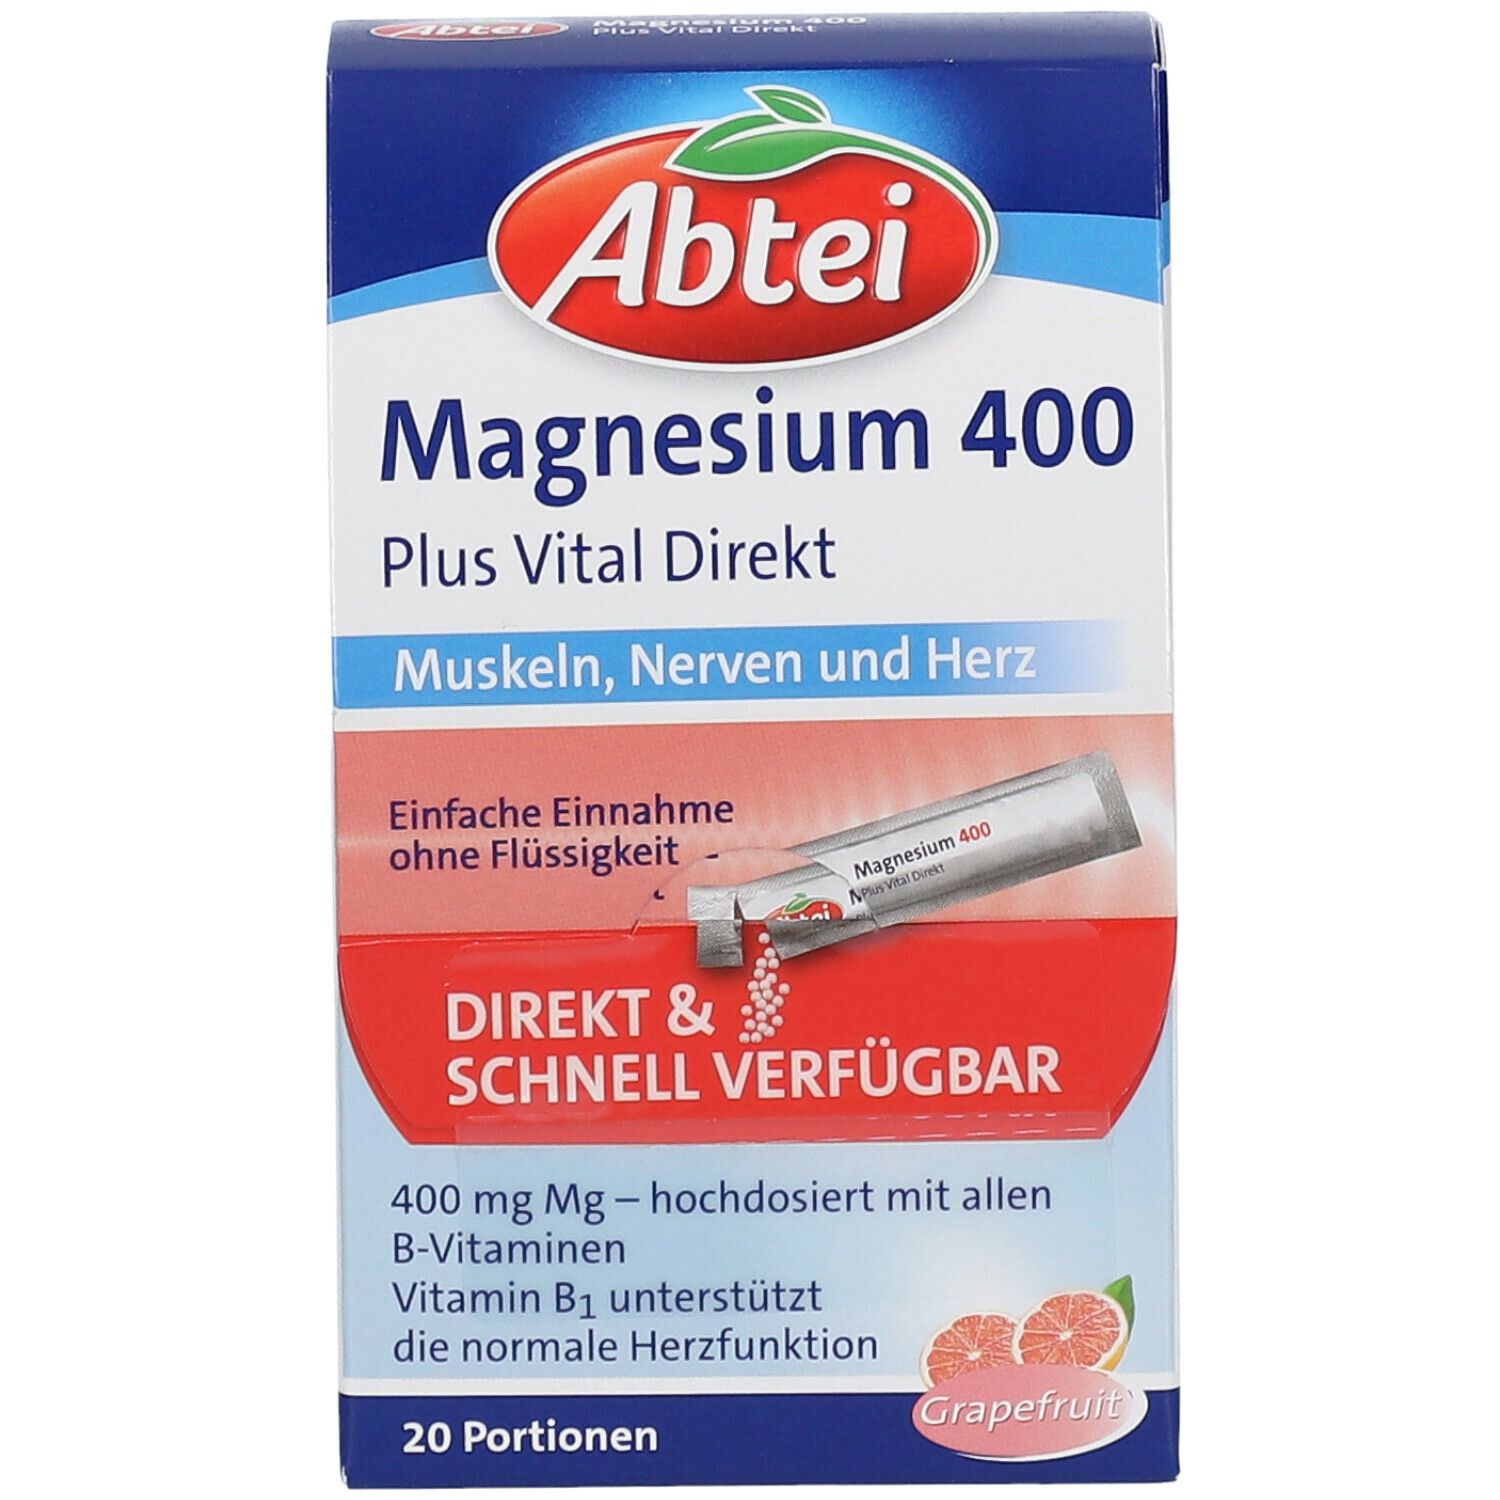 Abtei Magnesium 400 Plus Vital Direkt